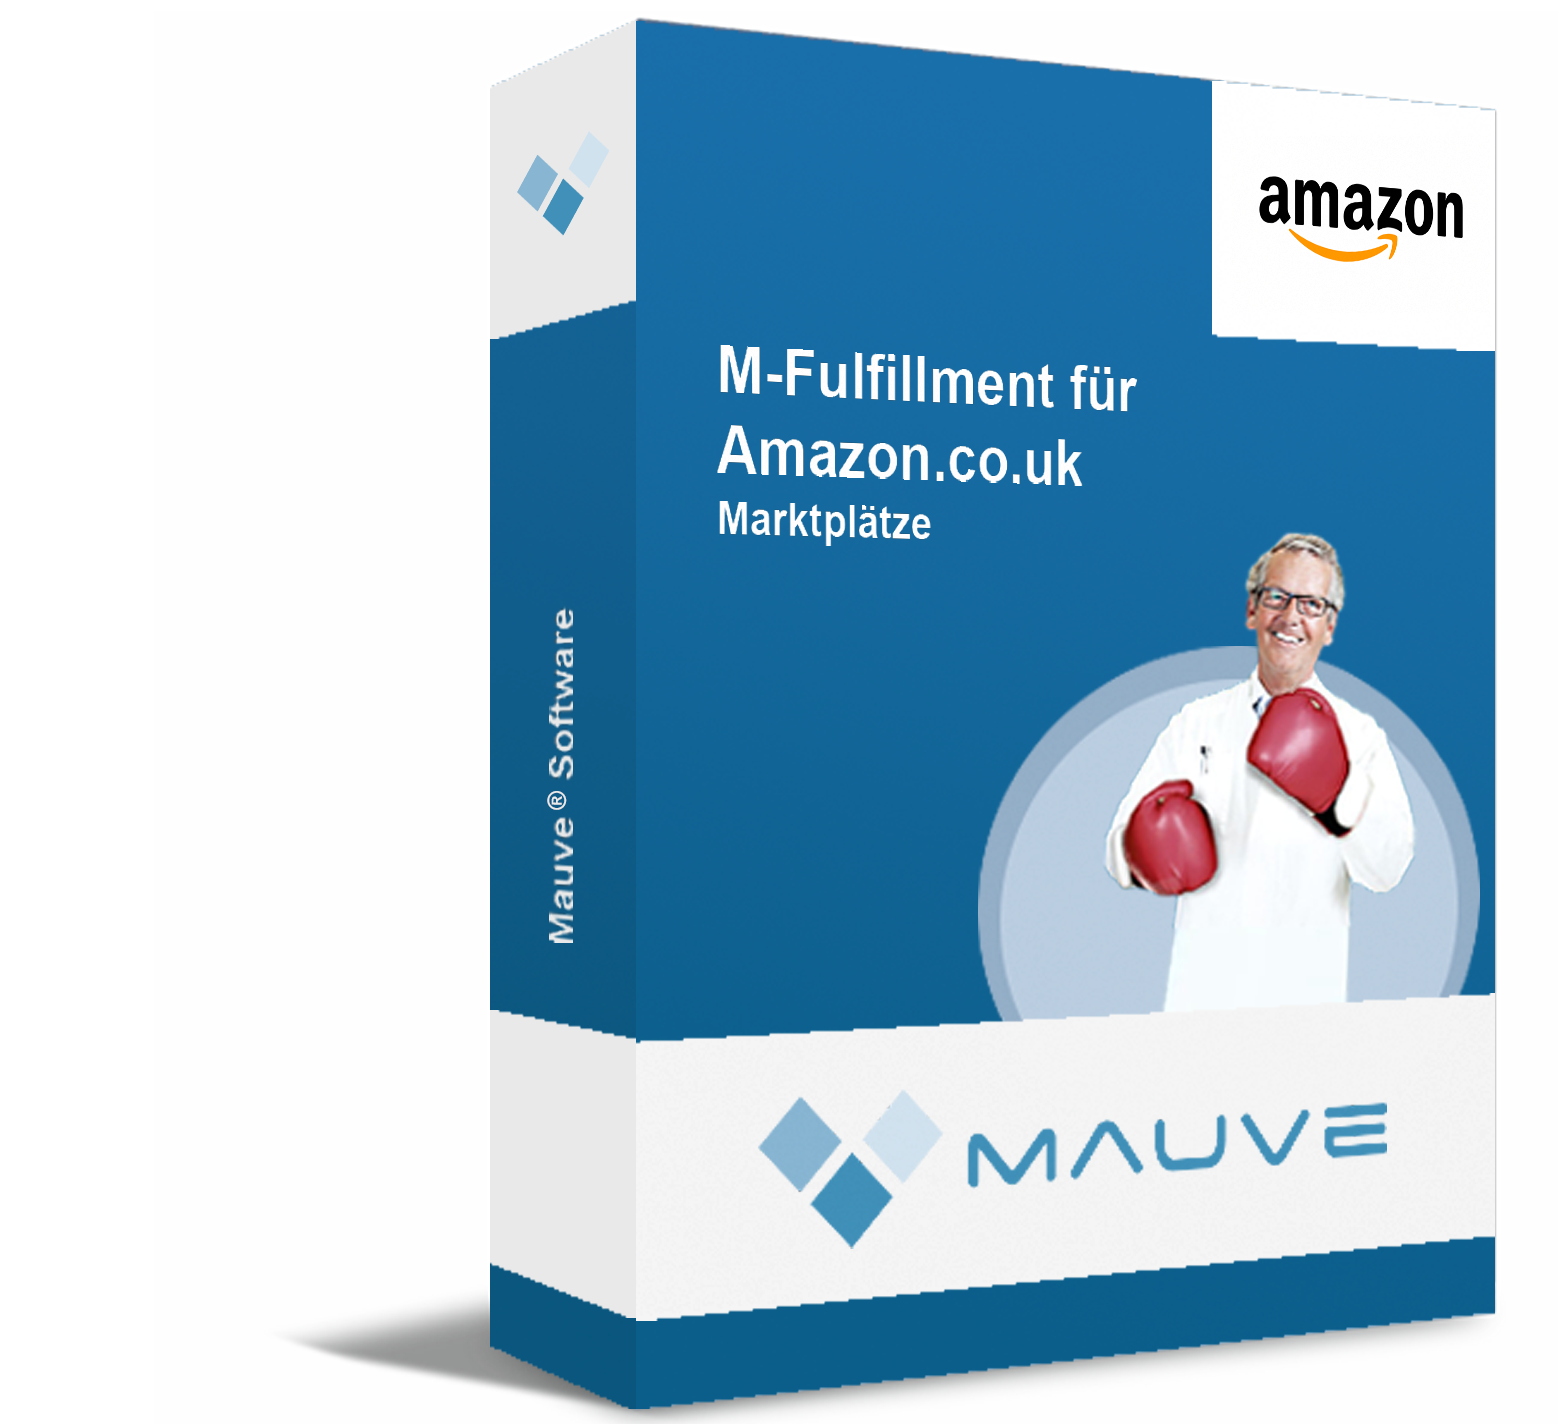 M-Fulfillment für Amazon.co.uk